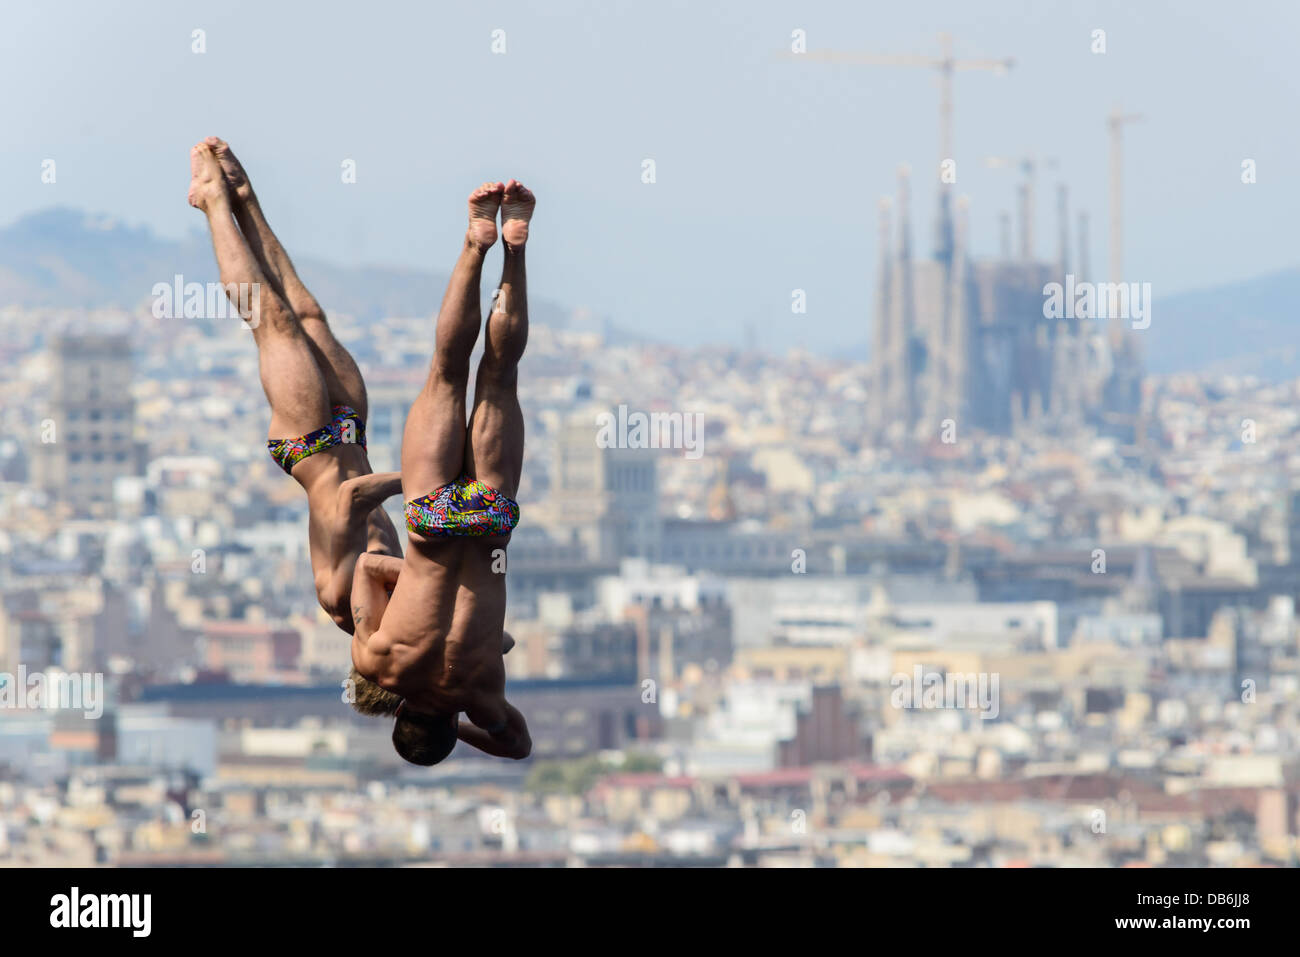 Barcelona, Spanien. 21. Juli 2013: die Ukraine Dmytro Mezhenskyi und Oleksandr Gorshkovozov Tauchen während des zehn-Meter-Synchro-Plattform-Wettbewerbs bei den 15. FINA Weltmeisterschaften in Barcelona Stockfoto